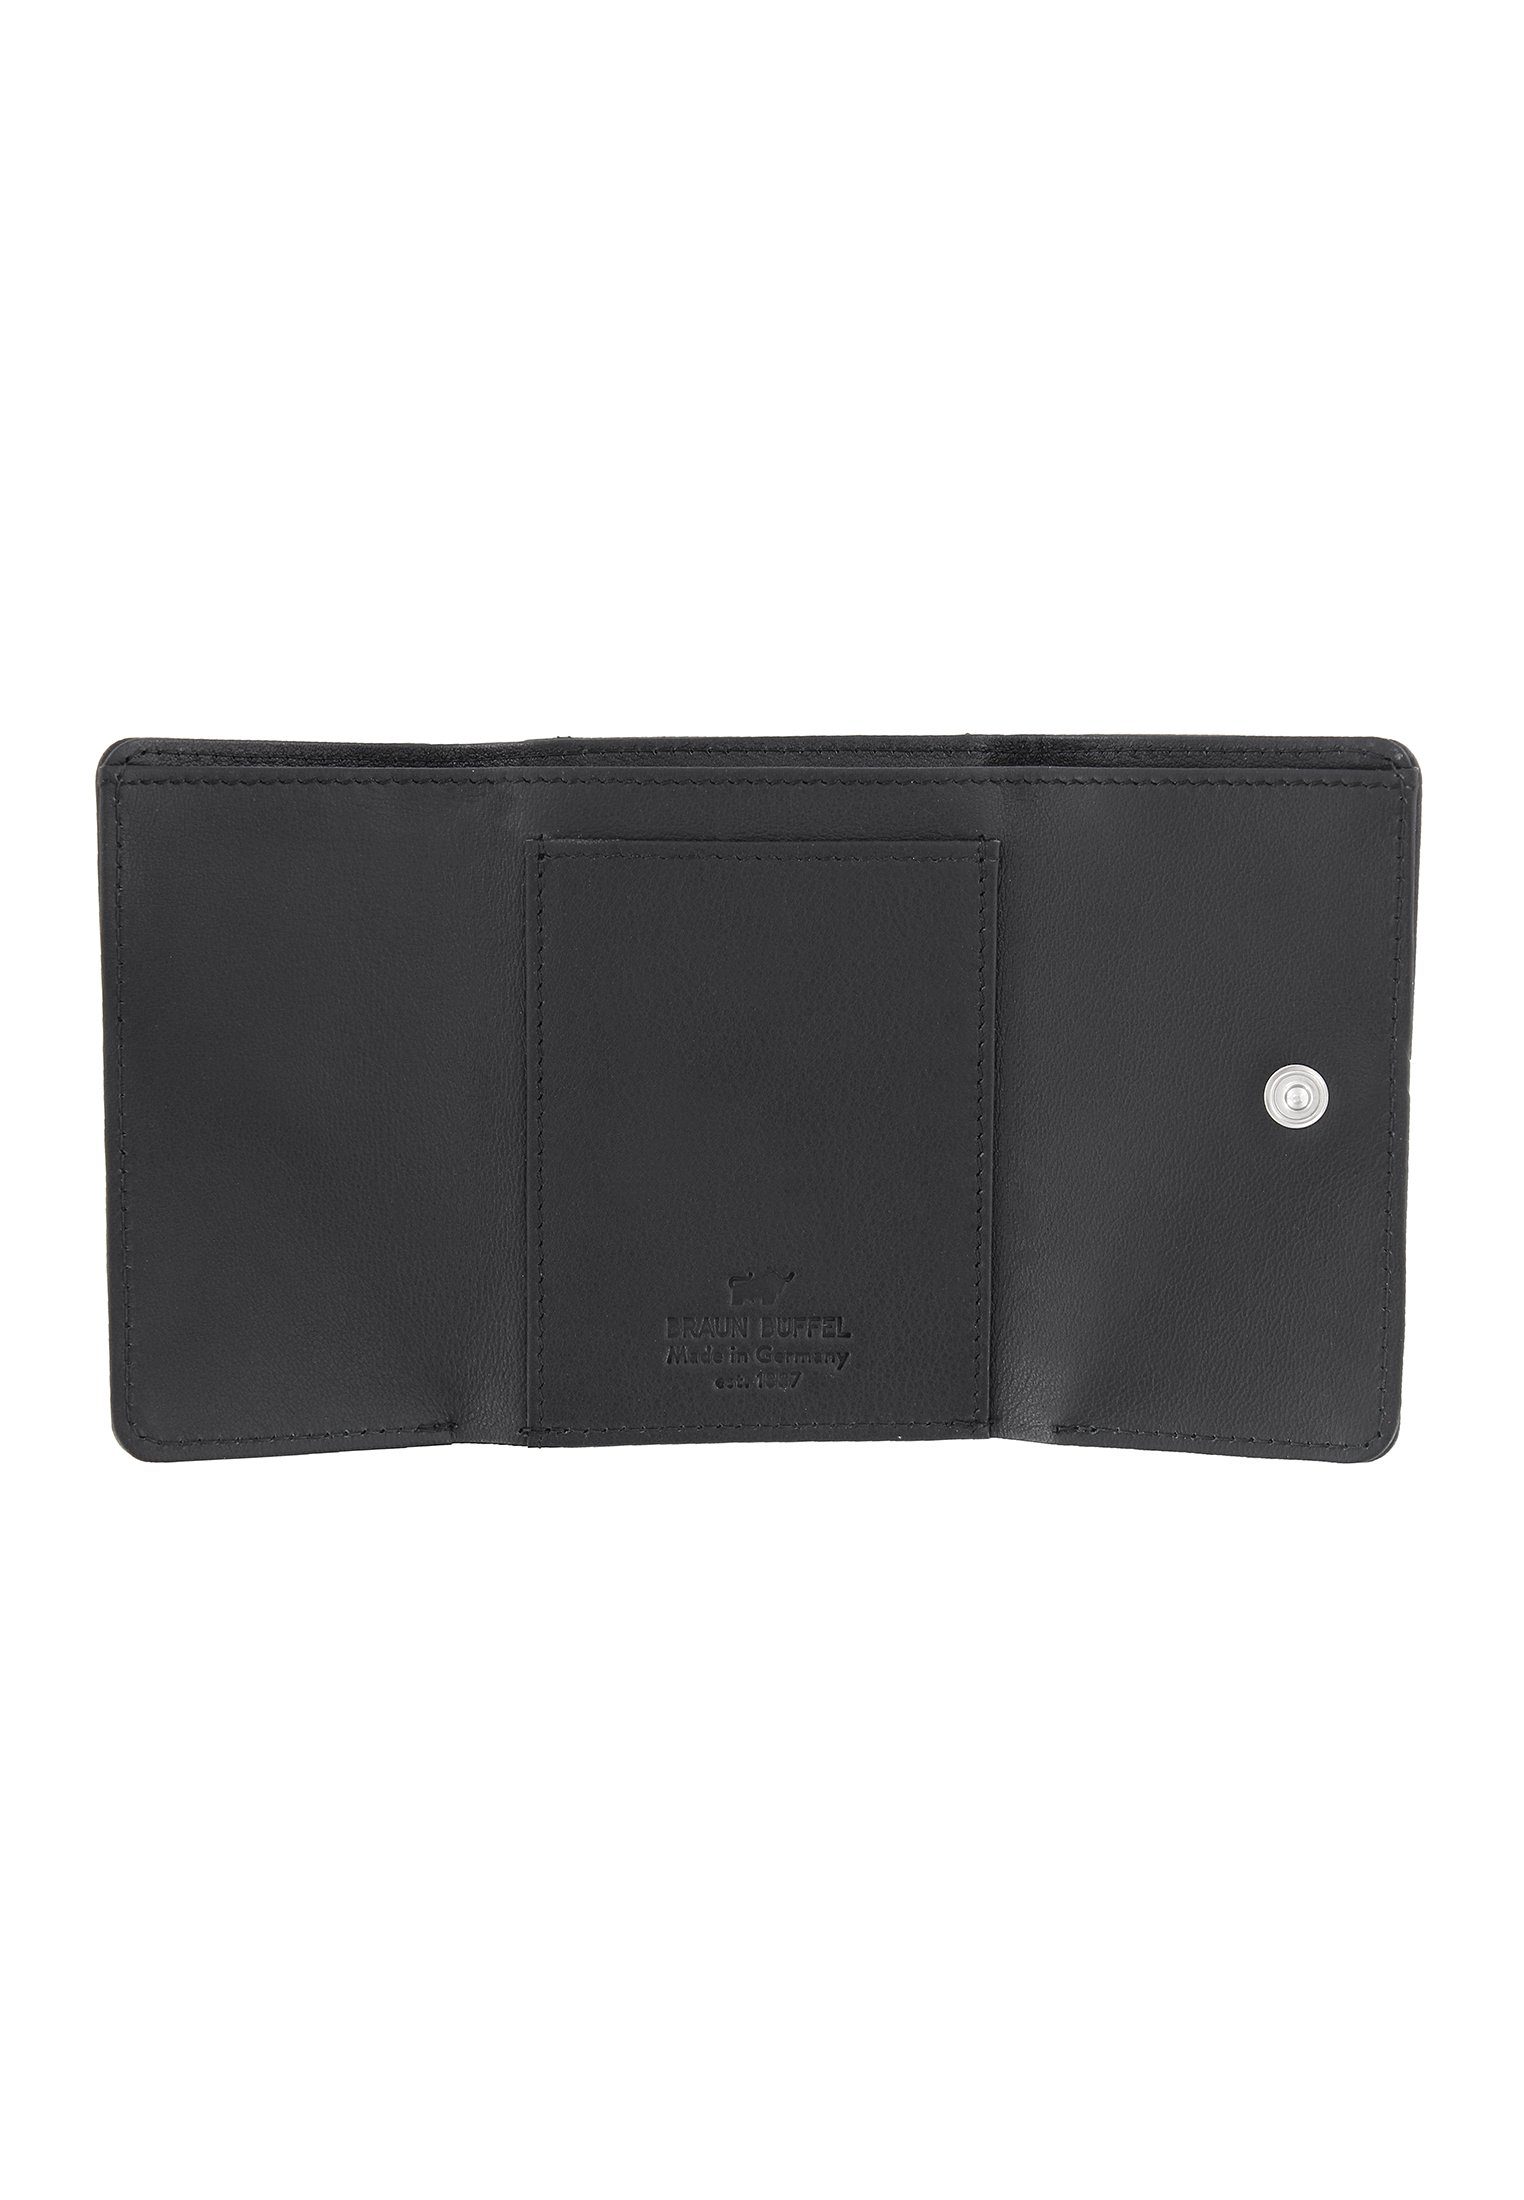 Damen Alle Damentaschen Braun Büffel Mini Geldbörse ARIZONA 2.0 Geldbörse S Flap schwarz, klein und kompakt für Münzen und Schei